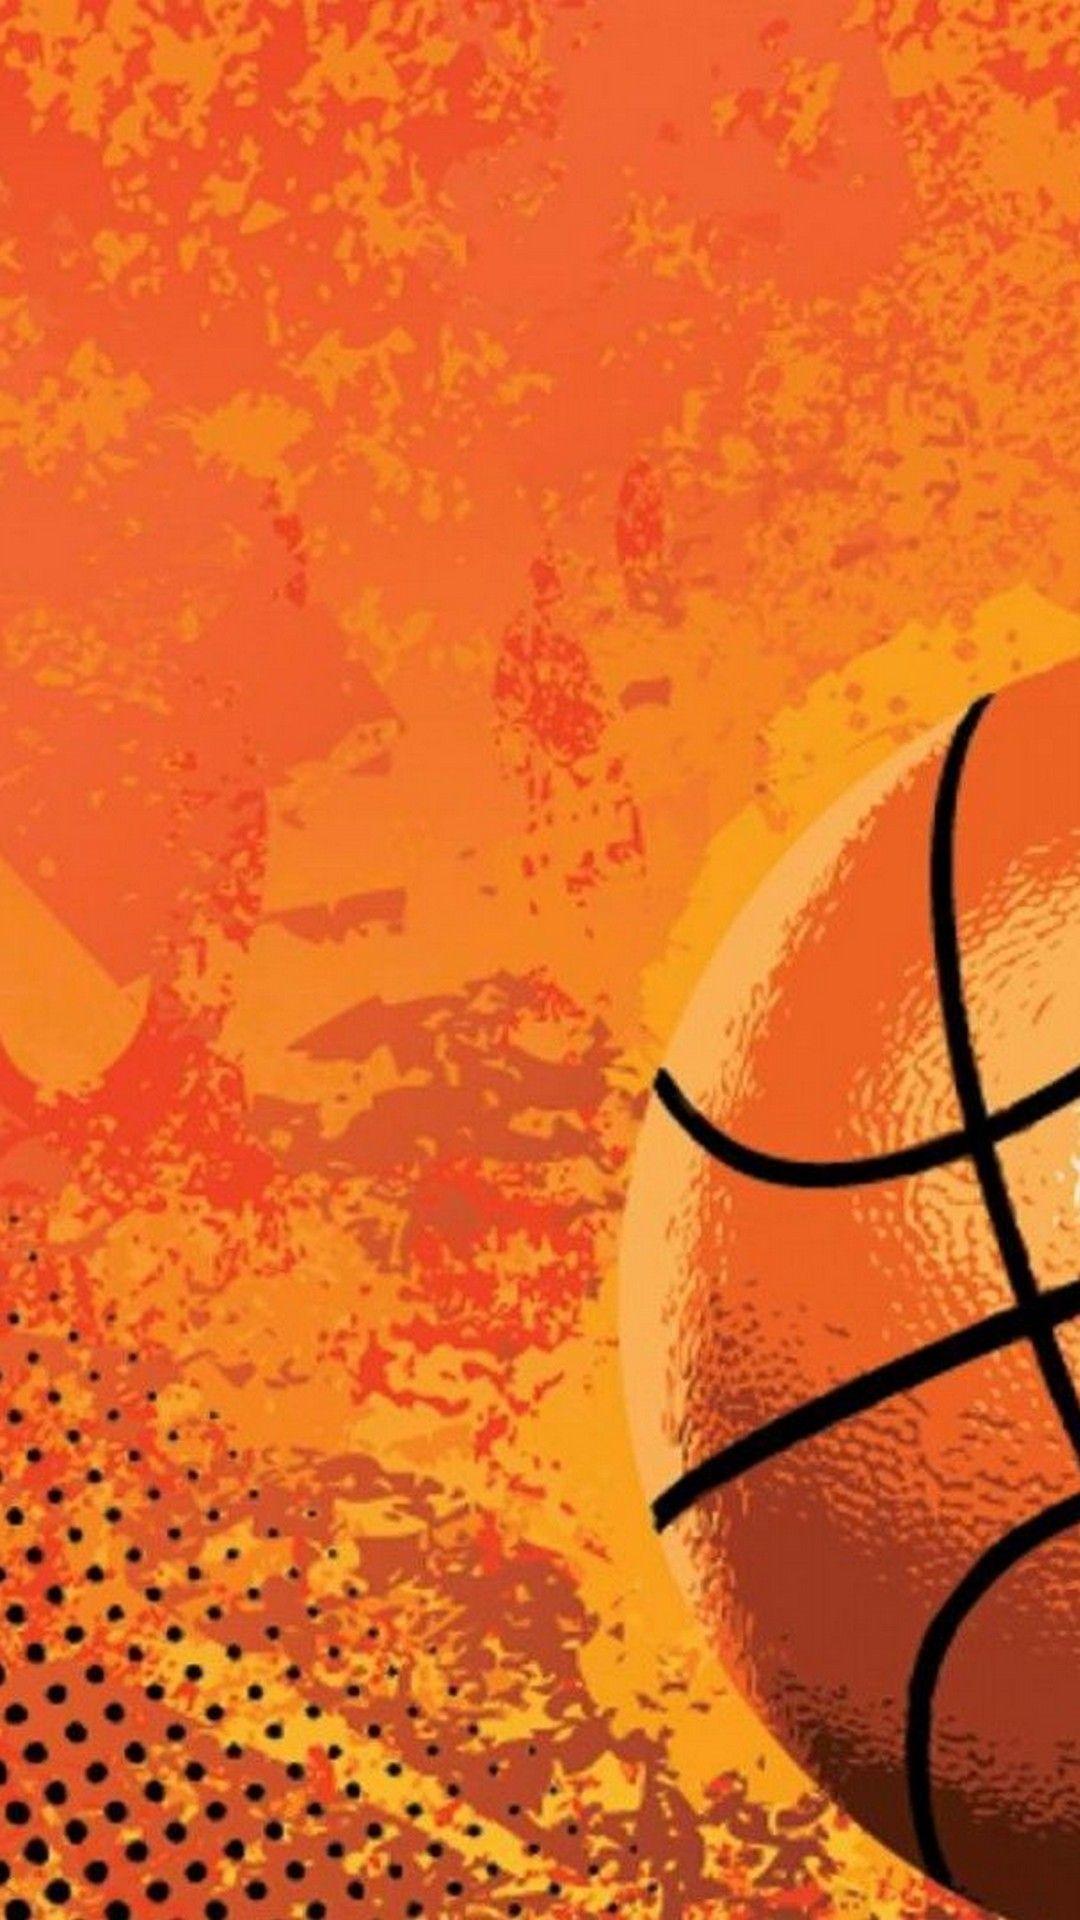 1080 x 1920 · jpeg - Basketball Games HD Wallpaper For iPhone | 2021 Basketball Wallpaper ...